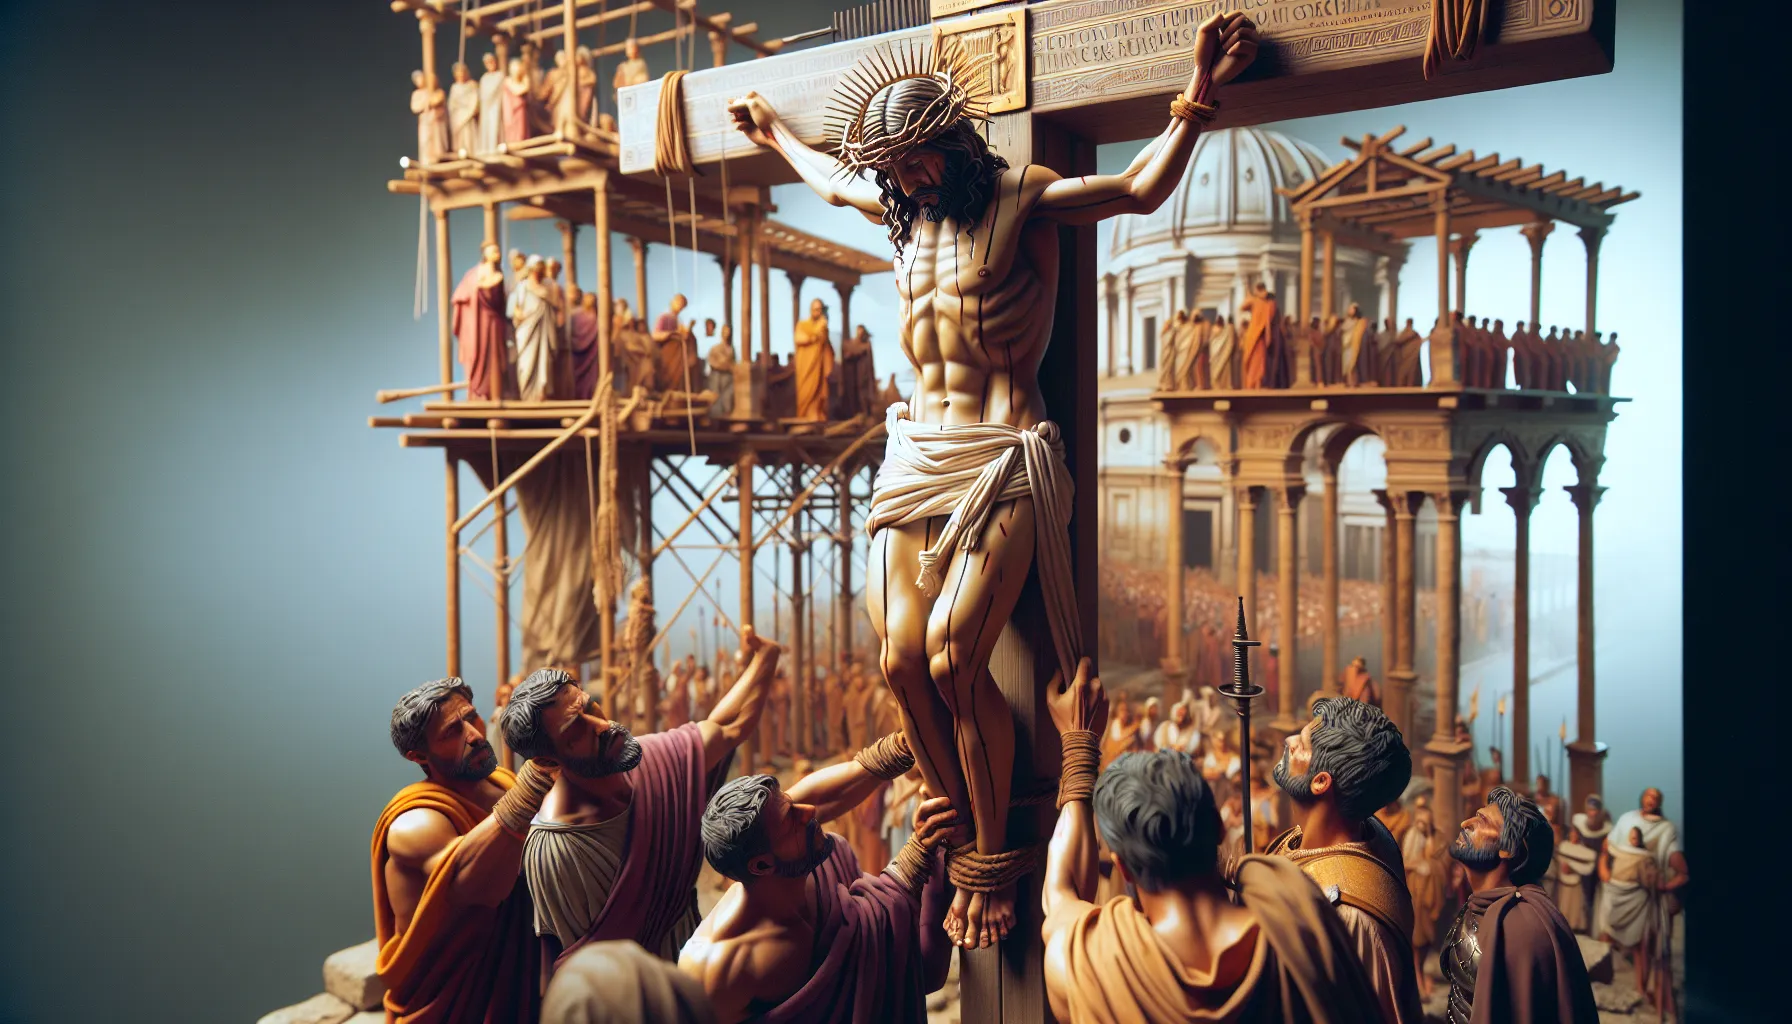 Representación visual de la Crucifixión en la antigua Roma